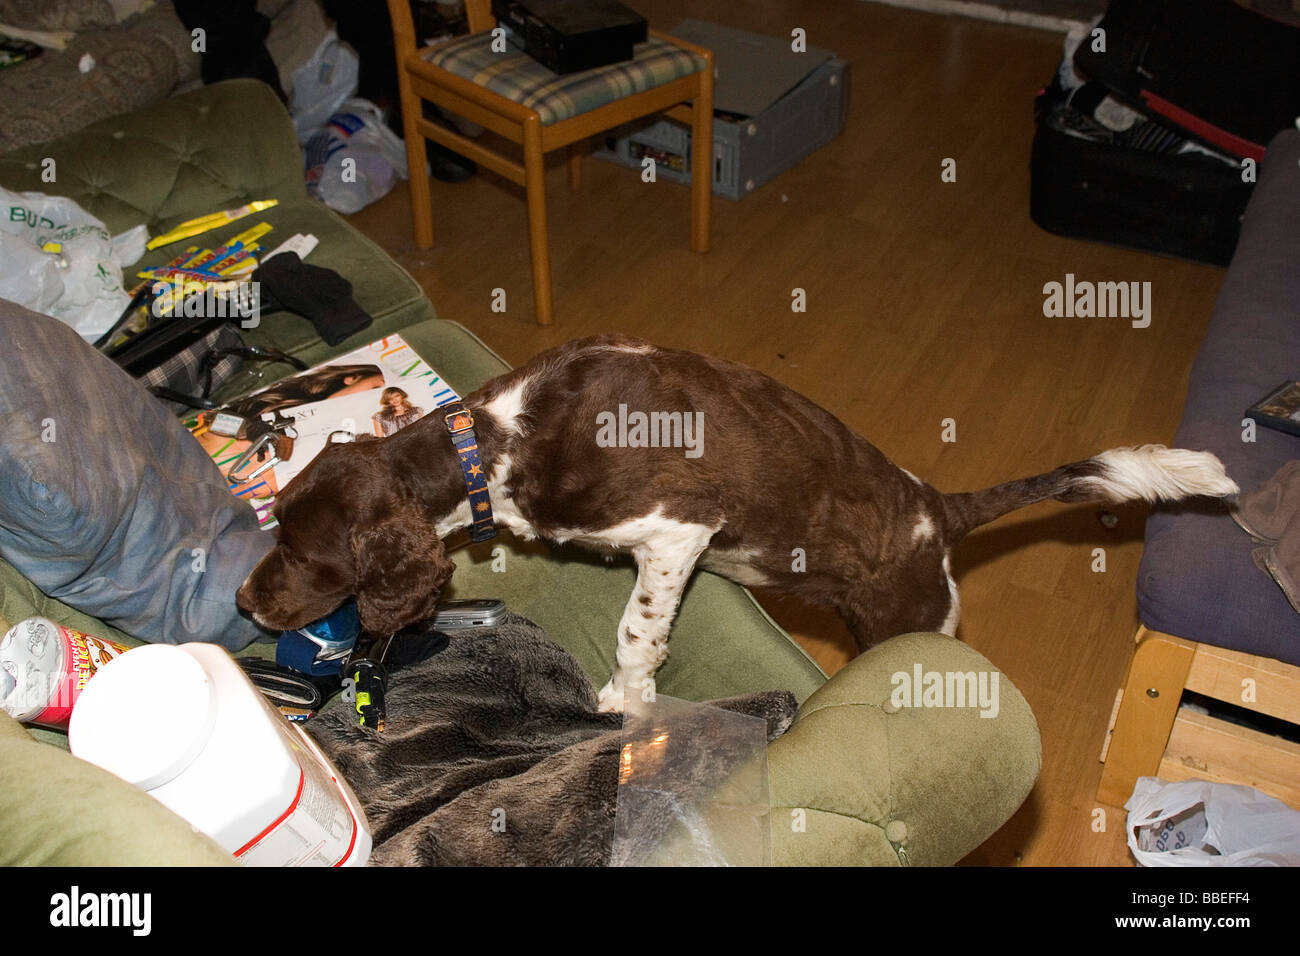 La loi et l'ordre de Raid de la drogue Police Springer Spaniel chien renifleur utilisé à la recherche d'accueil résidentiel au cours de la drogue 21. Banque D'Images